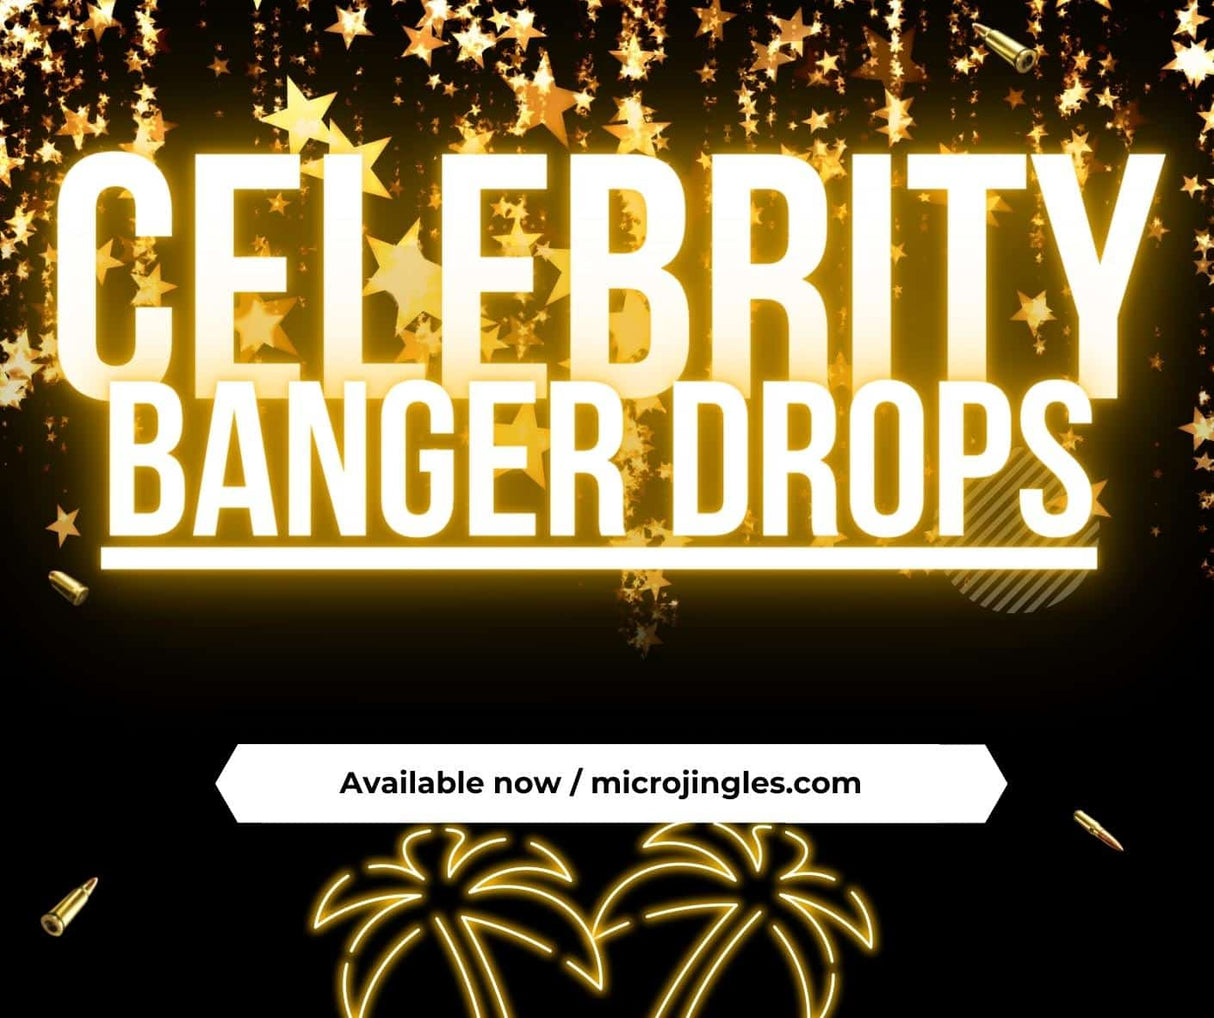 Banger DJ Drops - Celebrity edition